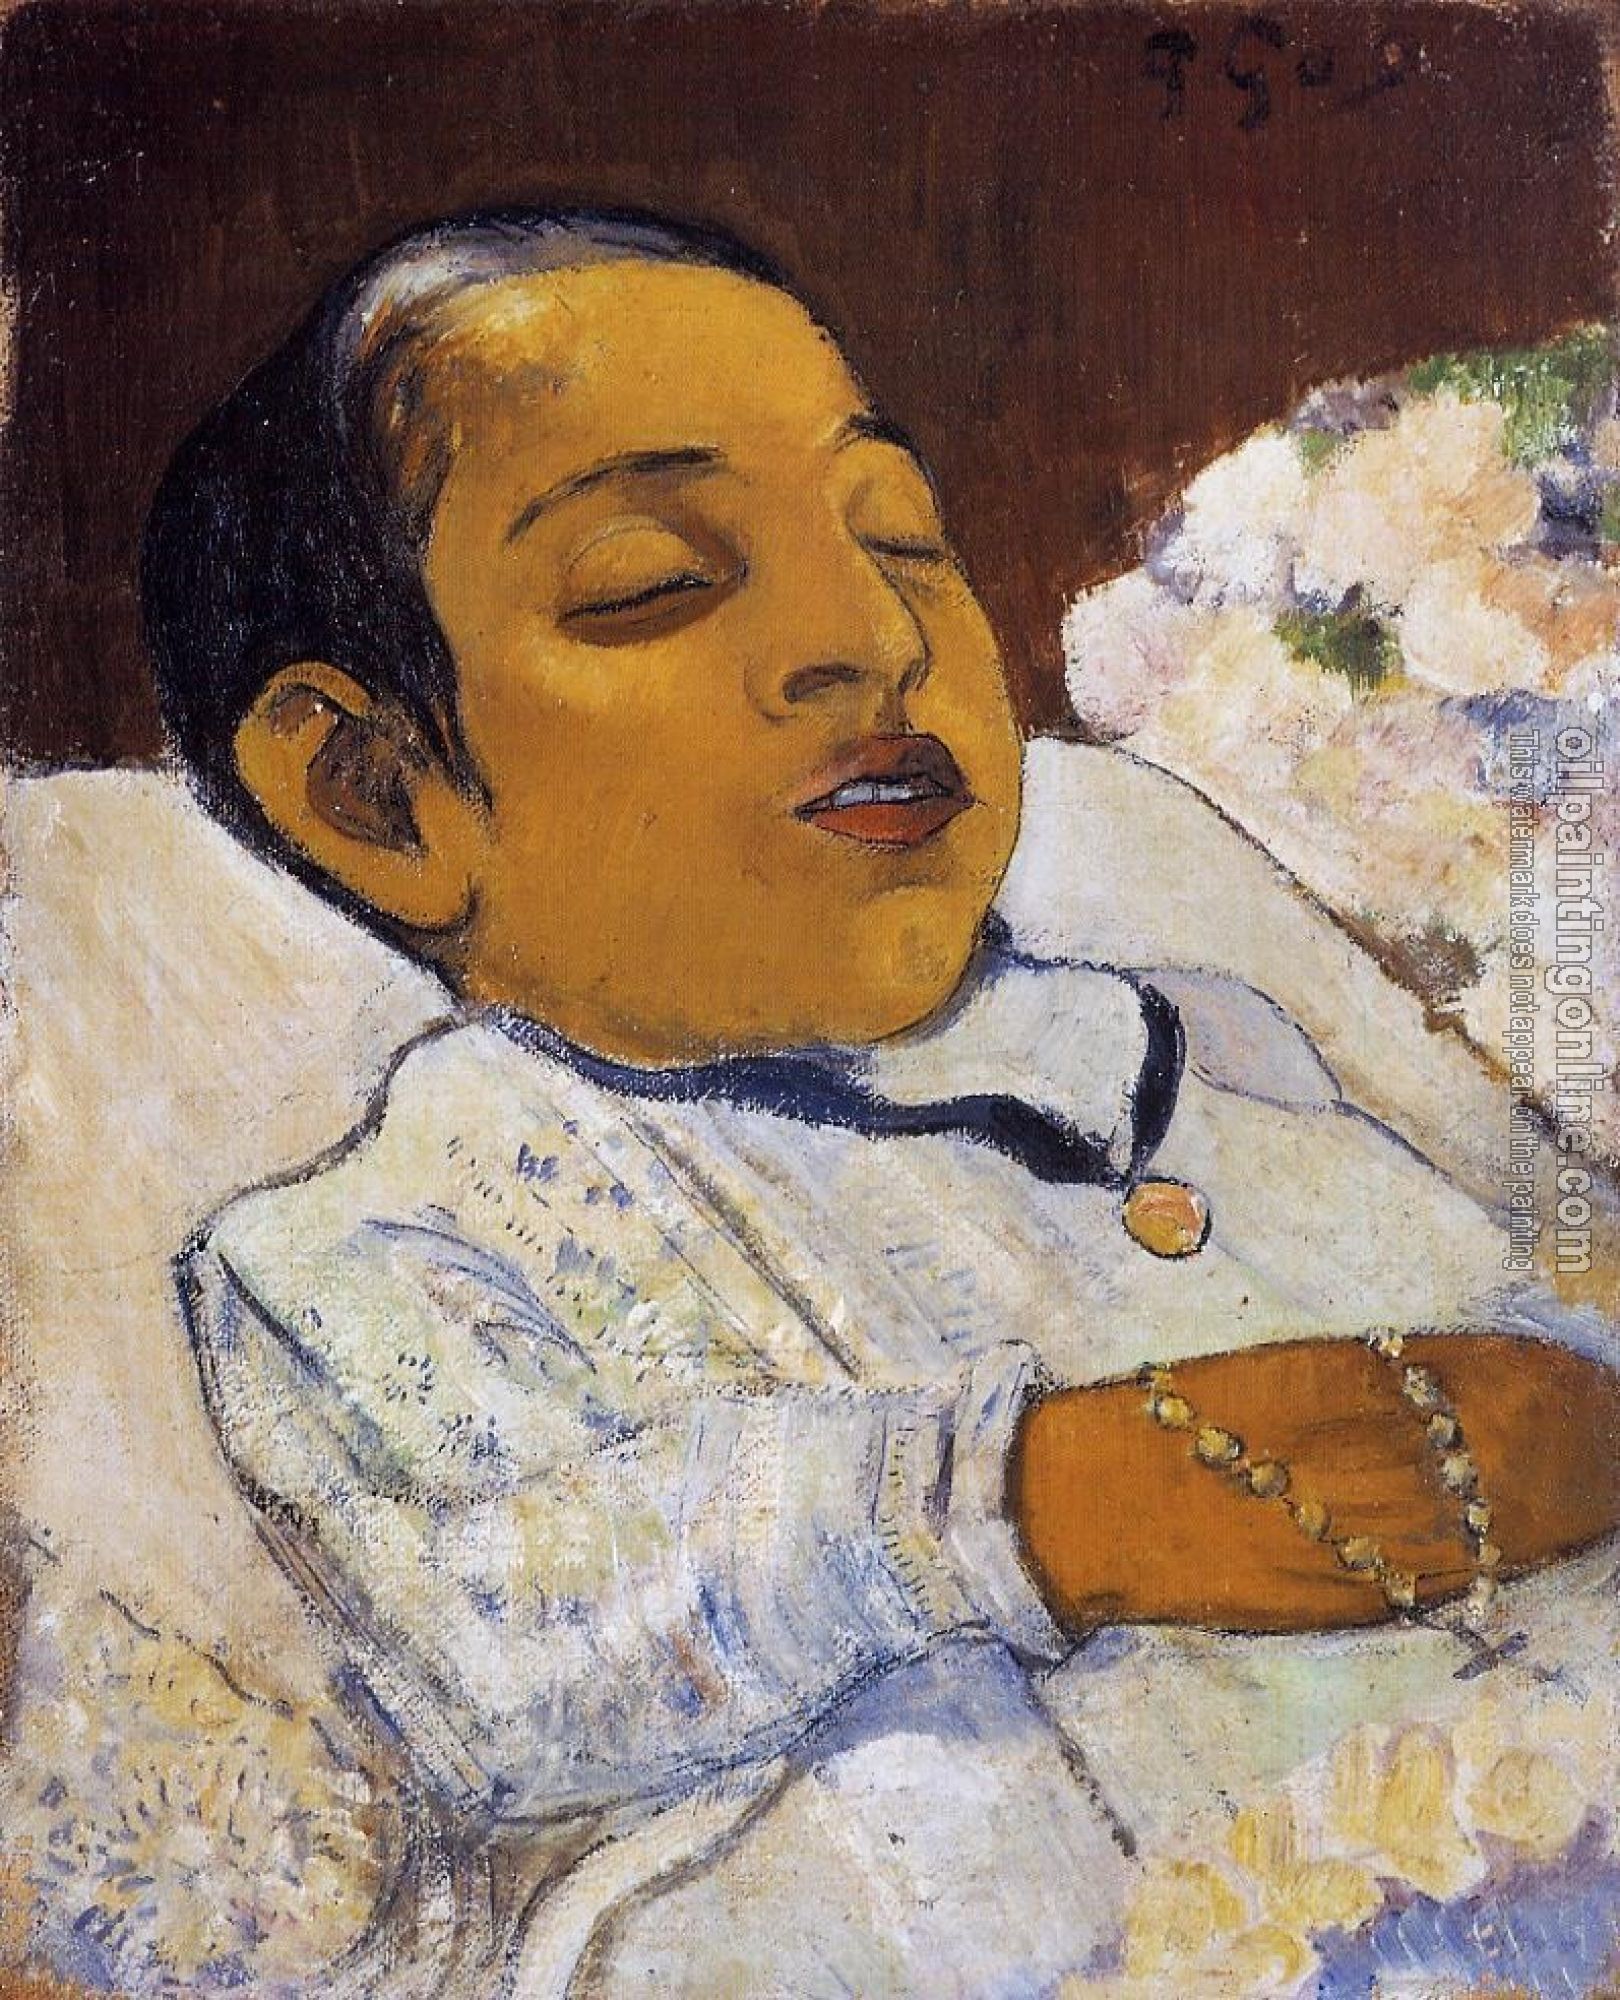 Gauguin, Paul - Atiti